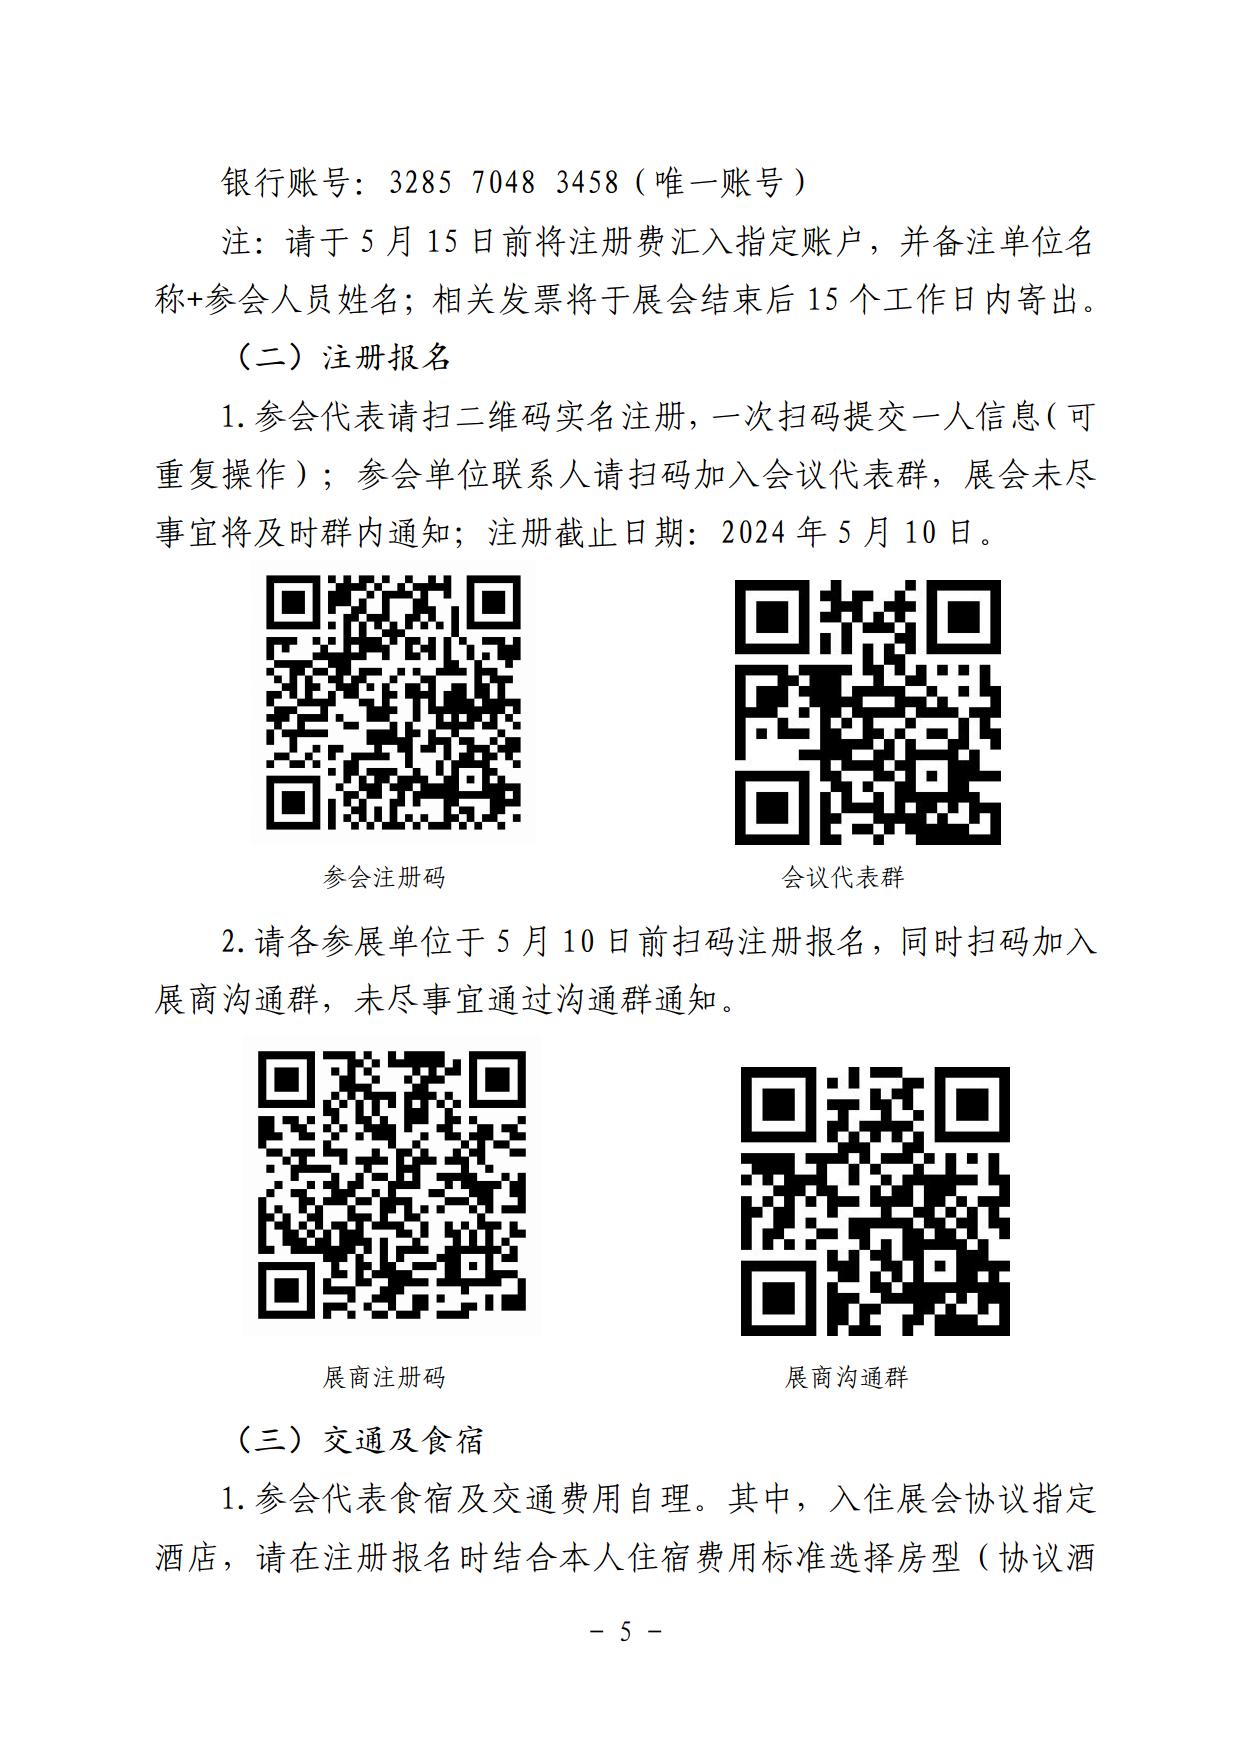 关于邀请参加第五届中国机场发展大会暨创新成果展的通知_page5.jpg